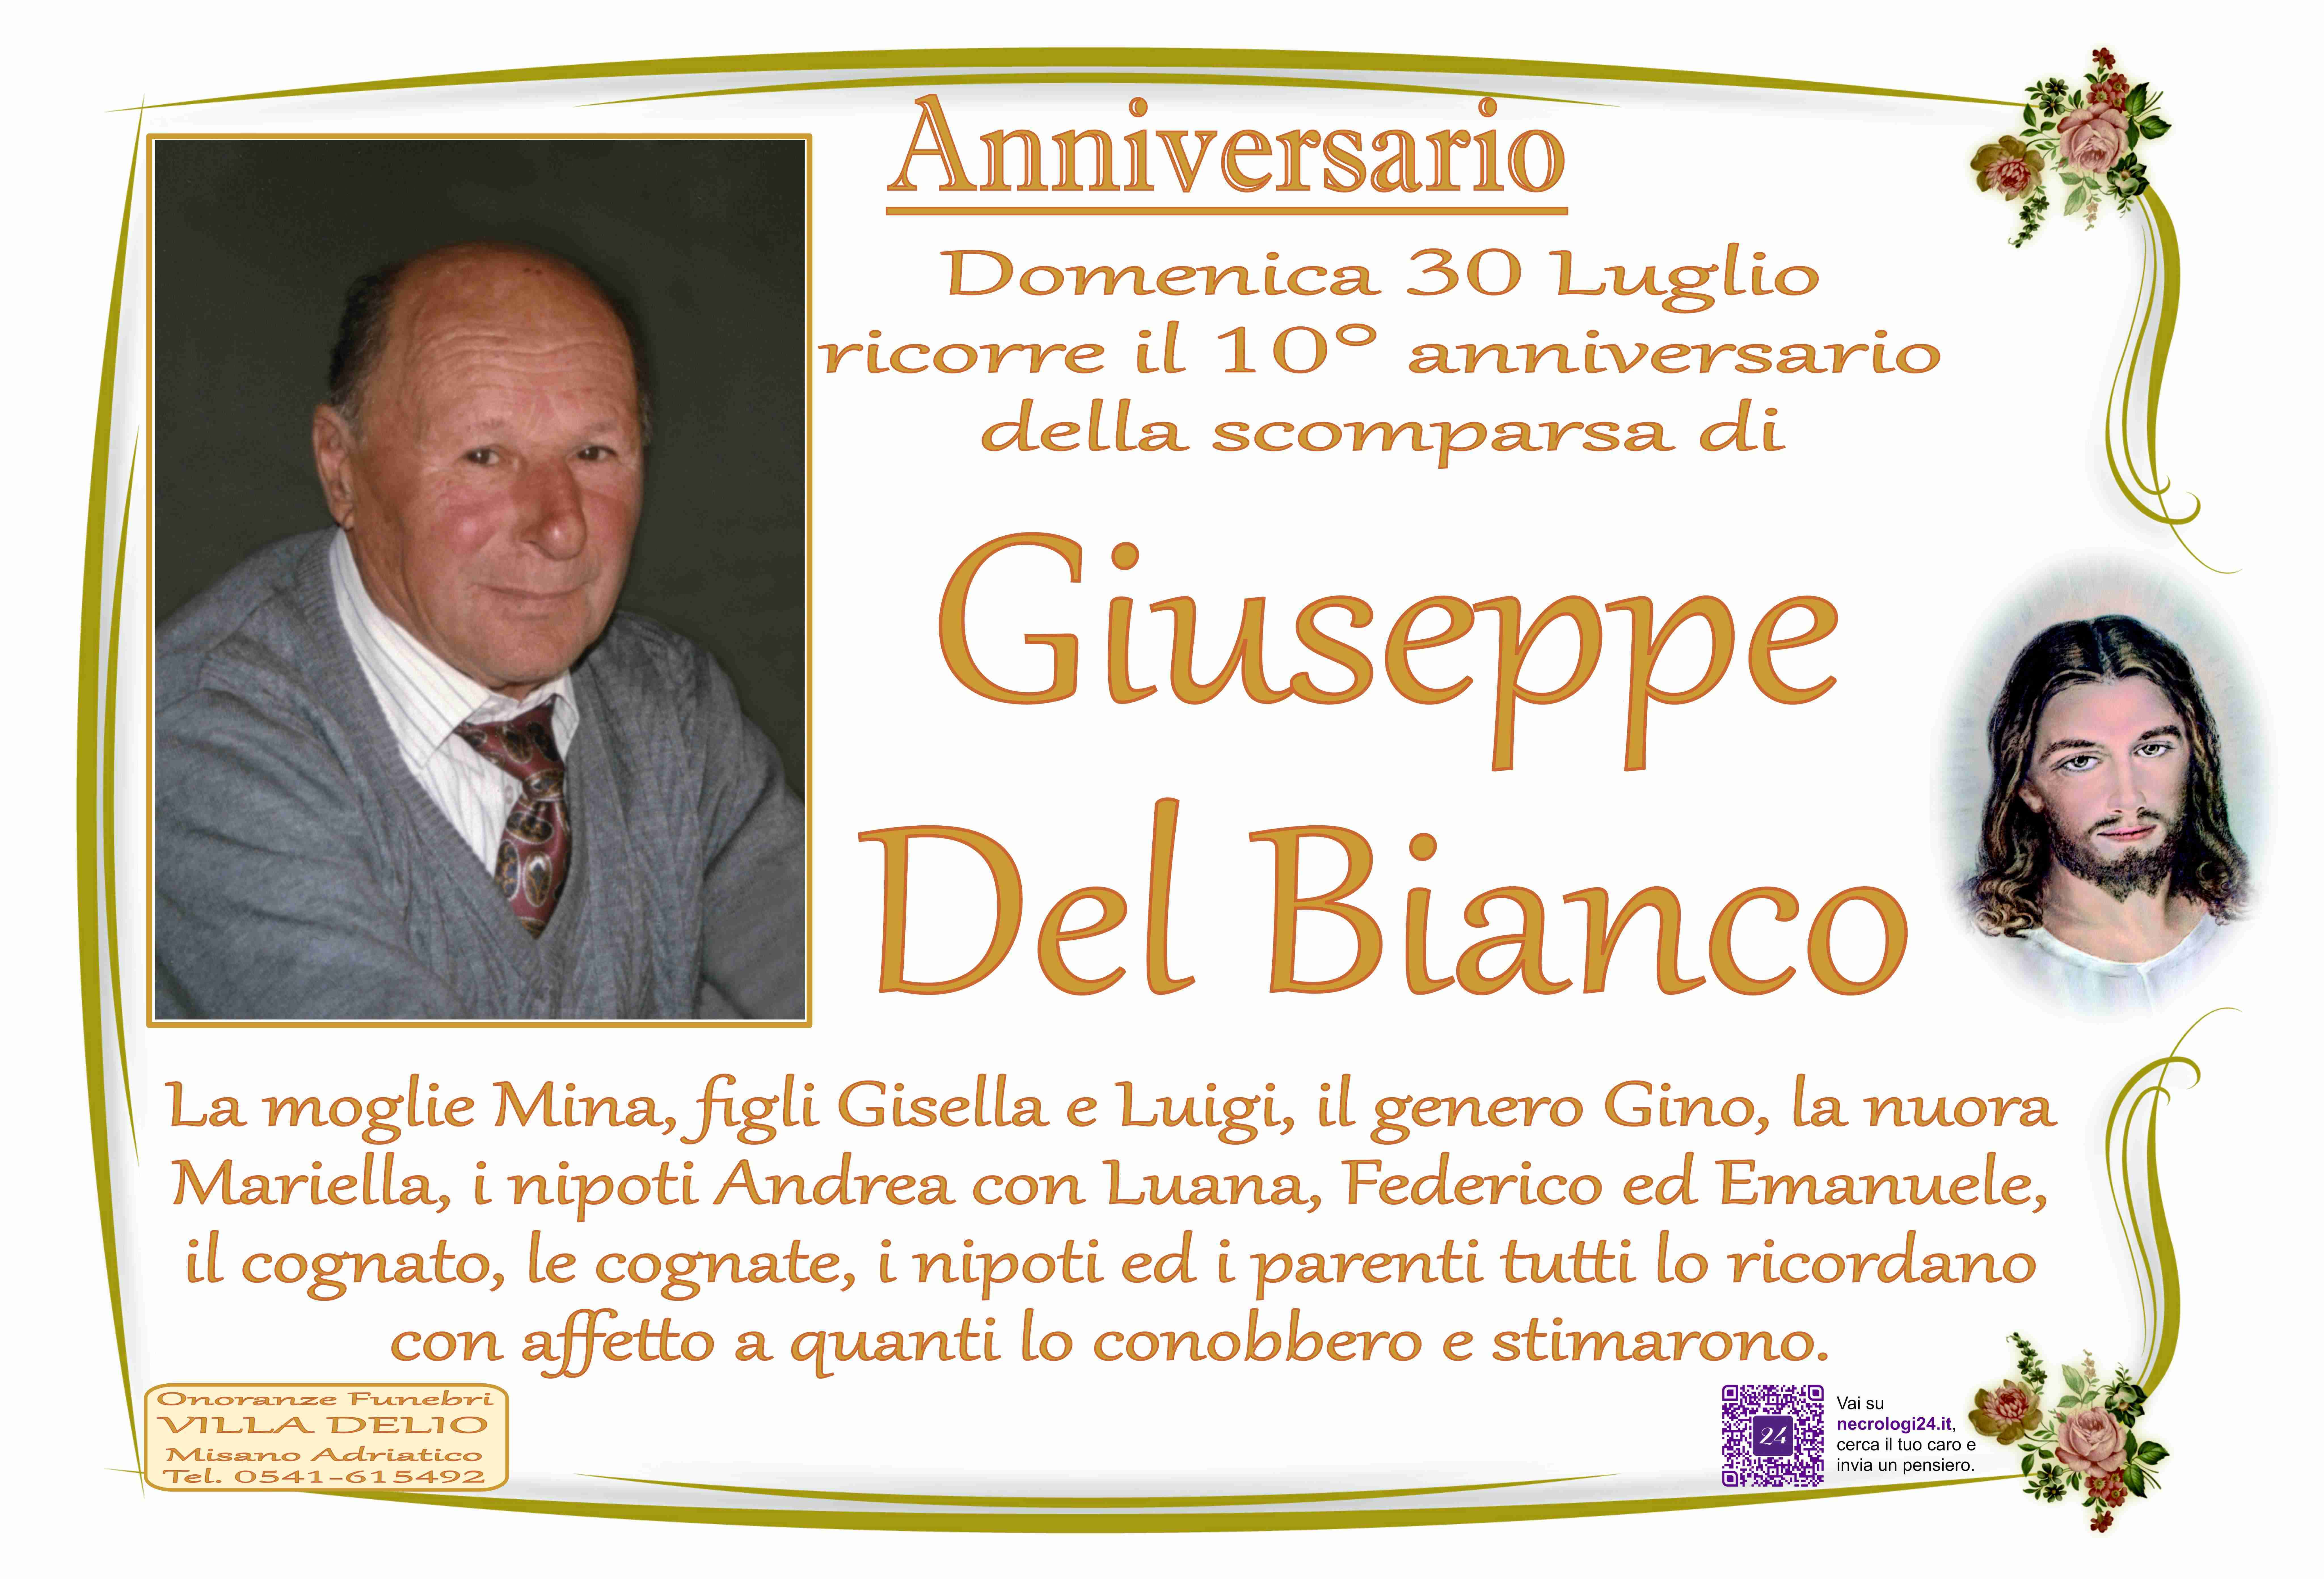 Giuseppe Del Bianco